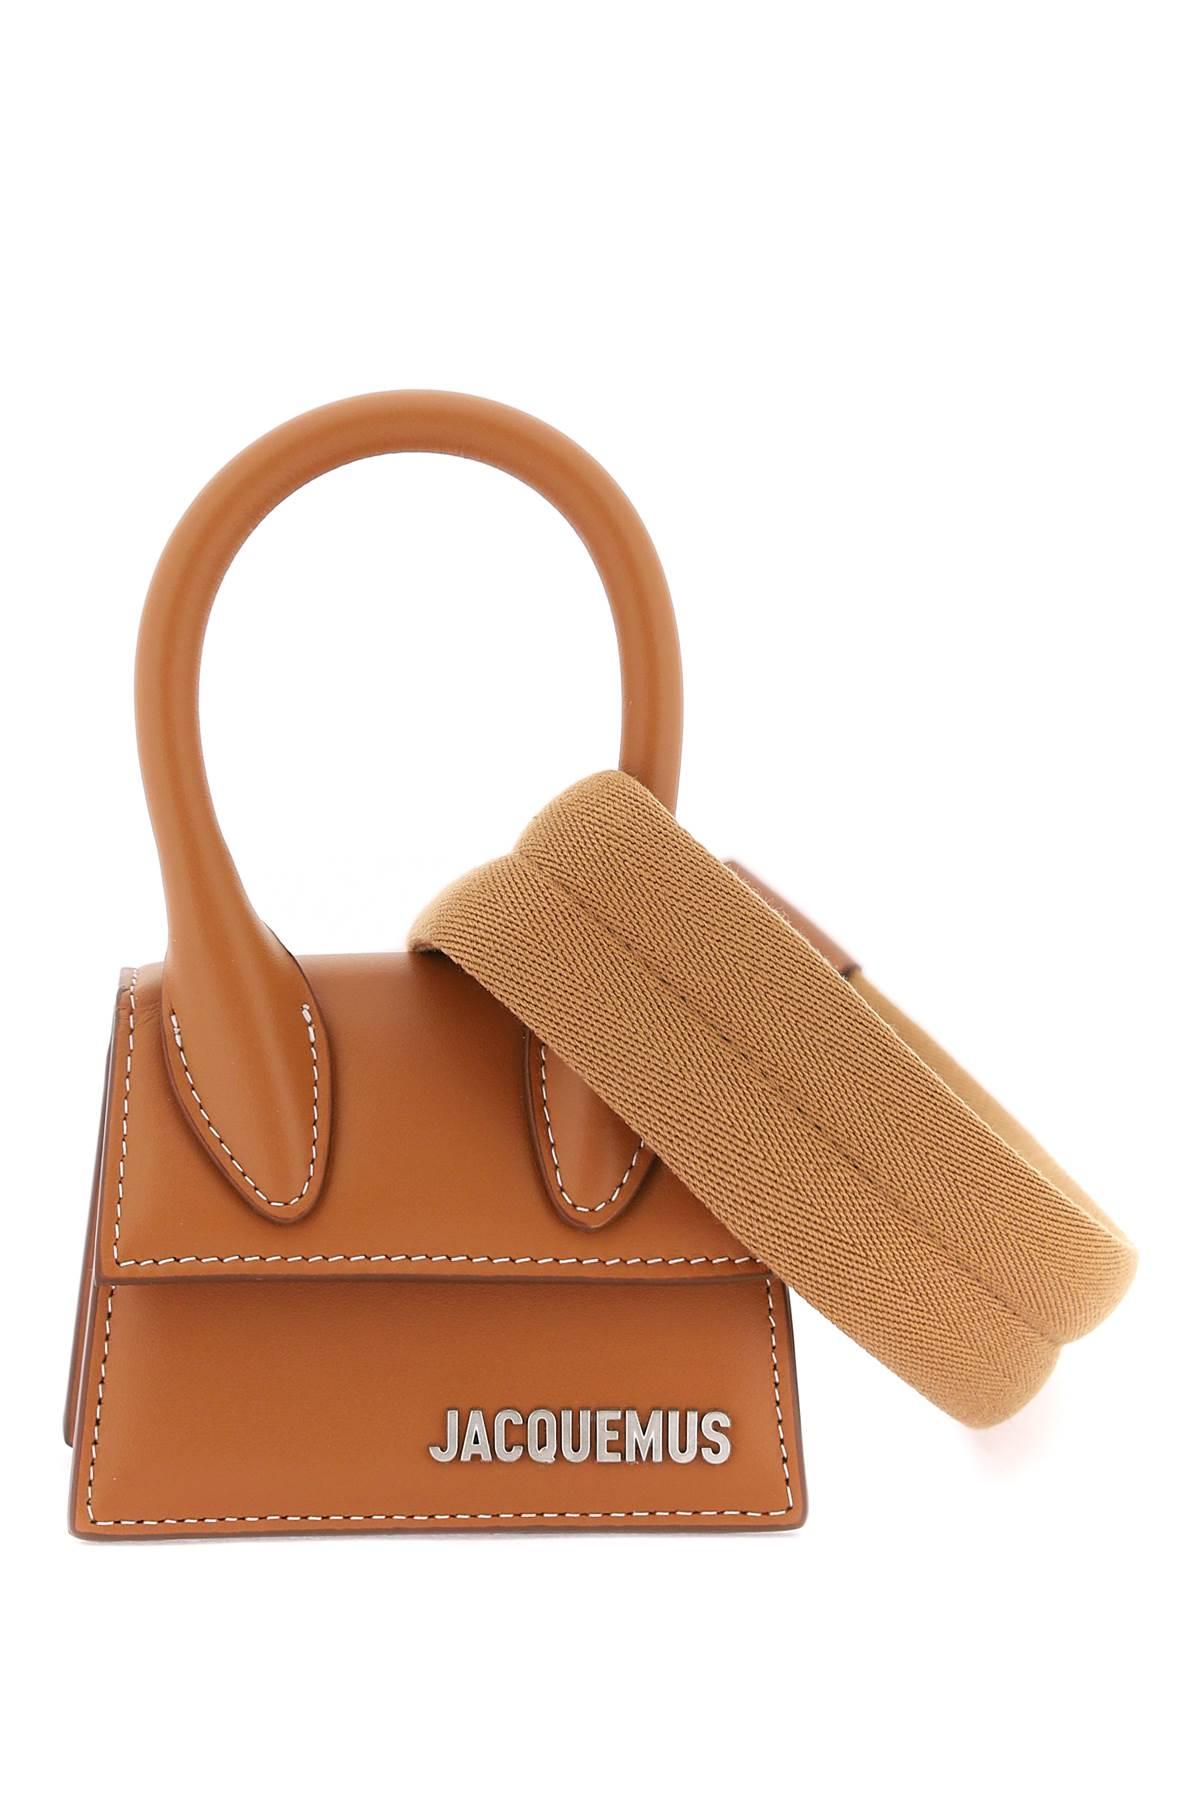 Jacquemus 'Le Chiquito' Mini Bag - Os